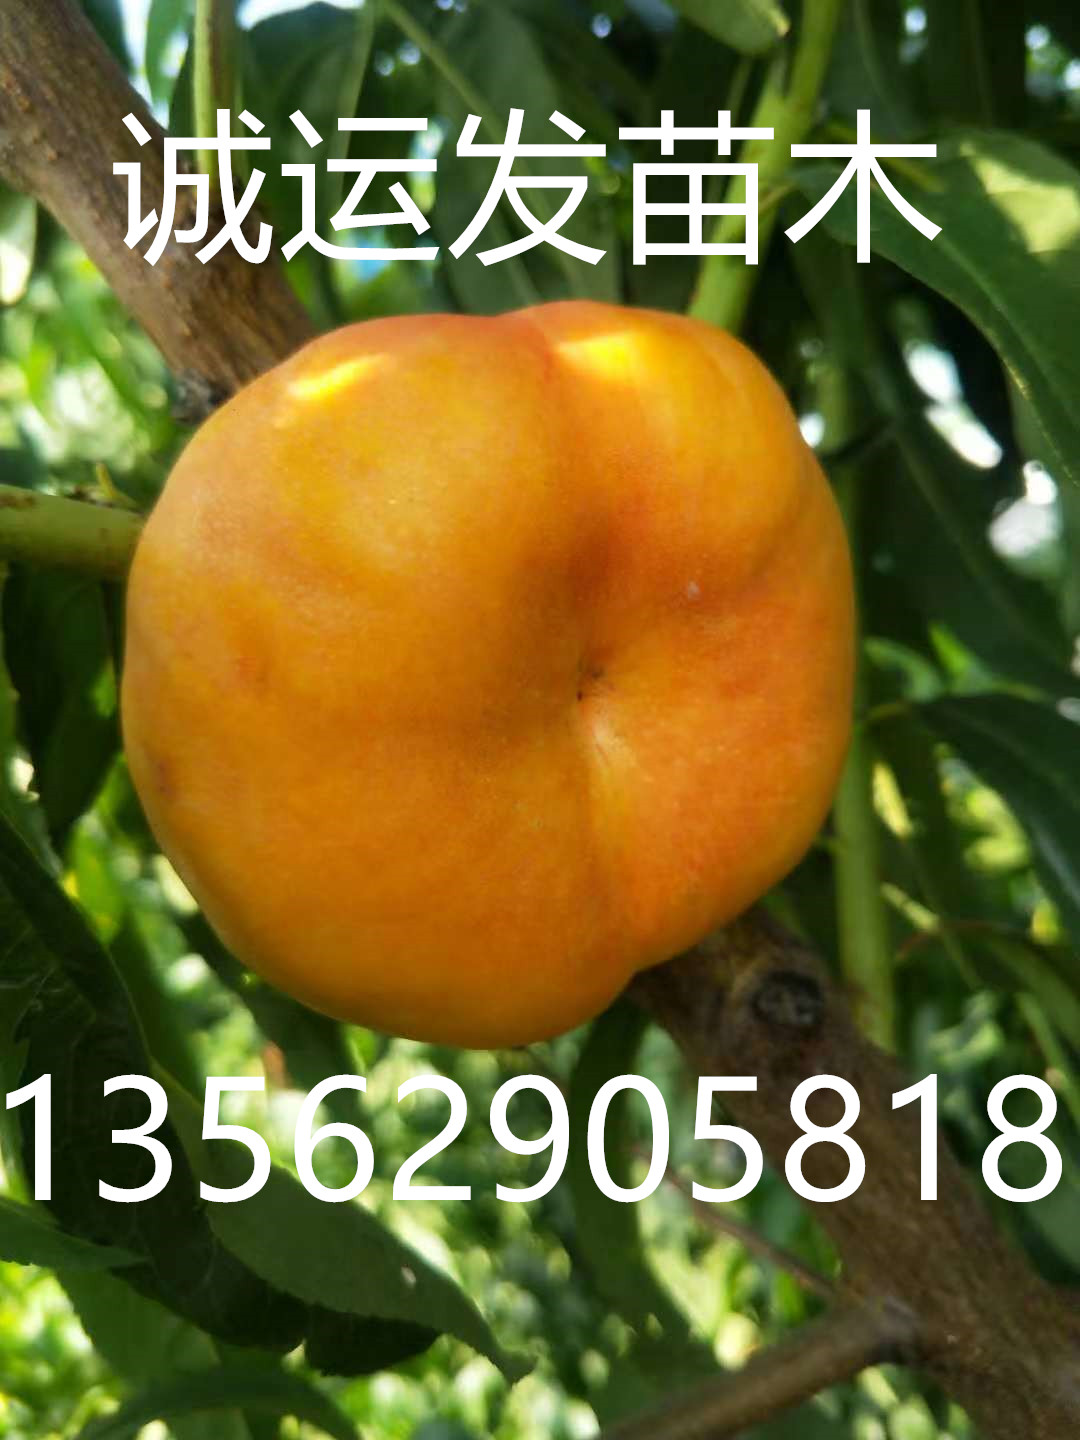 早熟的黄桃品种油蟠5号什么时候成熟	